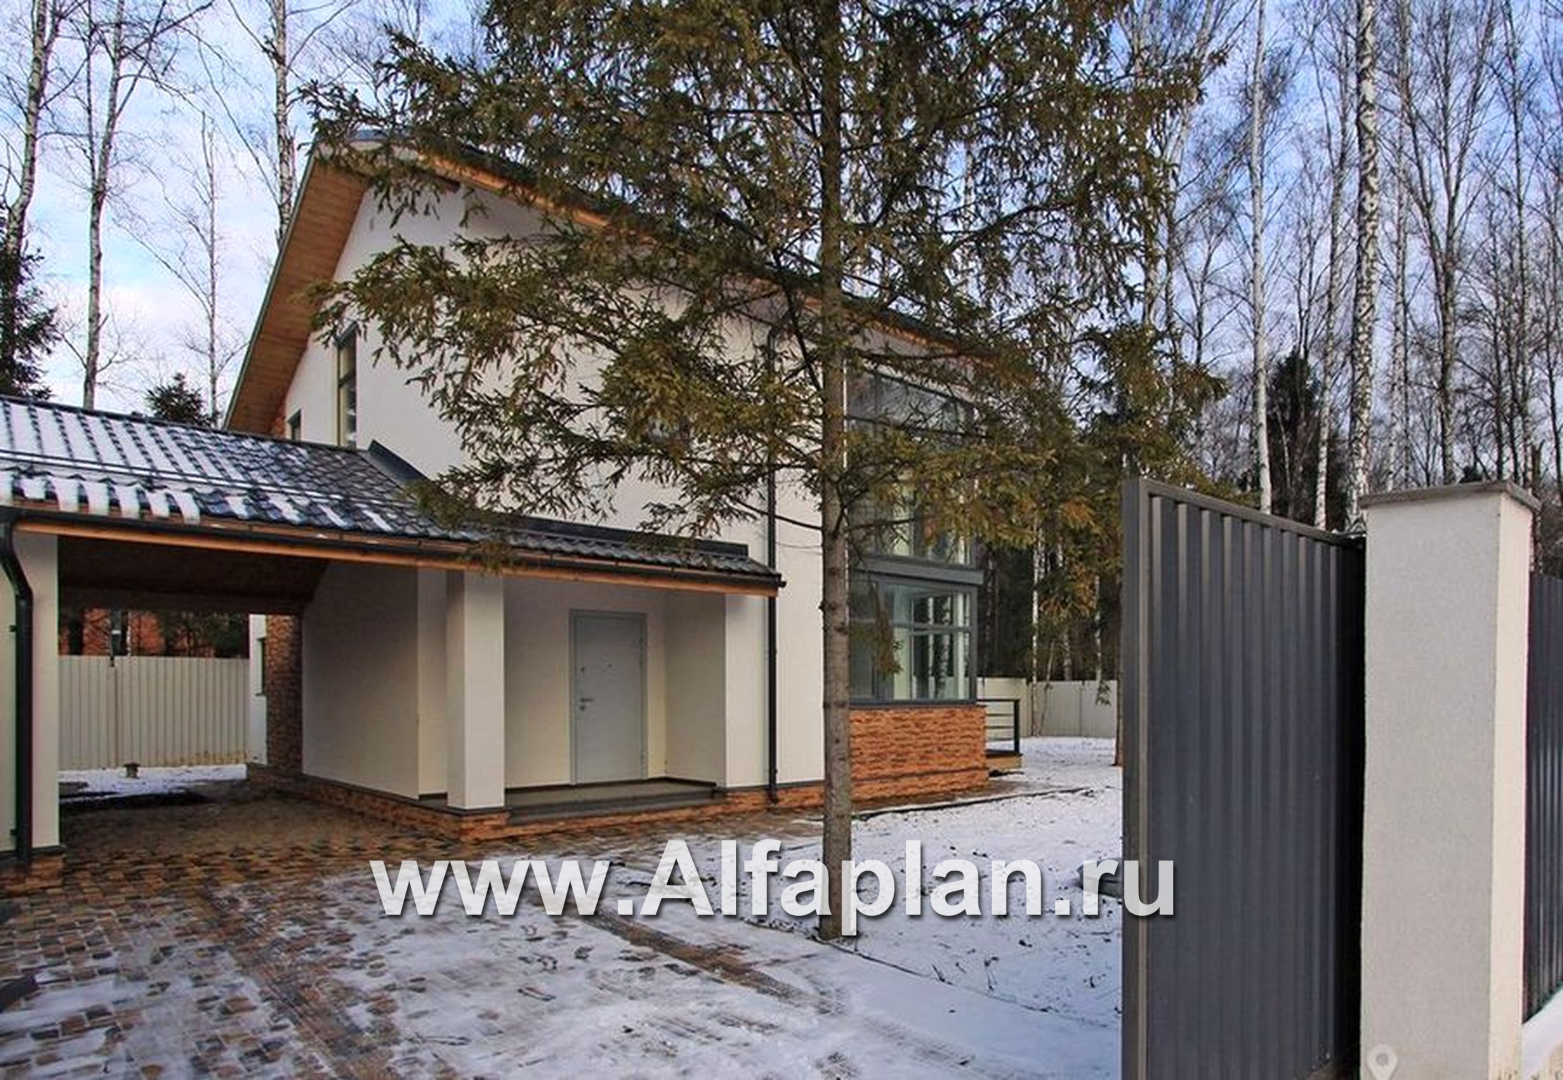 Проекты домов Альфаплан - Двухэтажный кирпичный коттедж с угловым витражом - дополнительное изображение №5